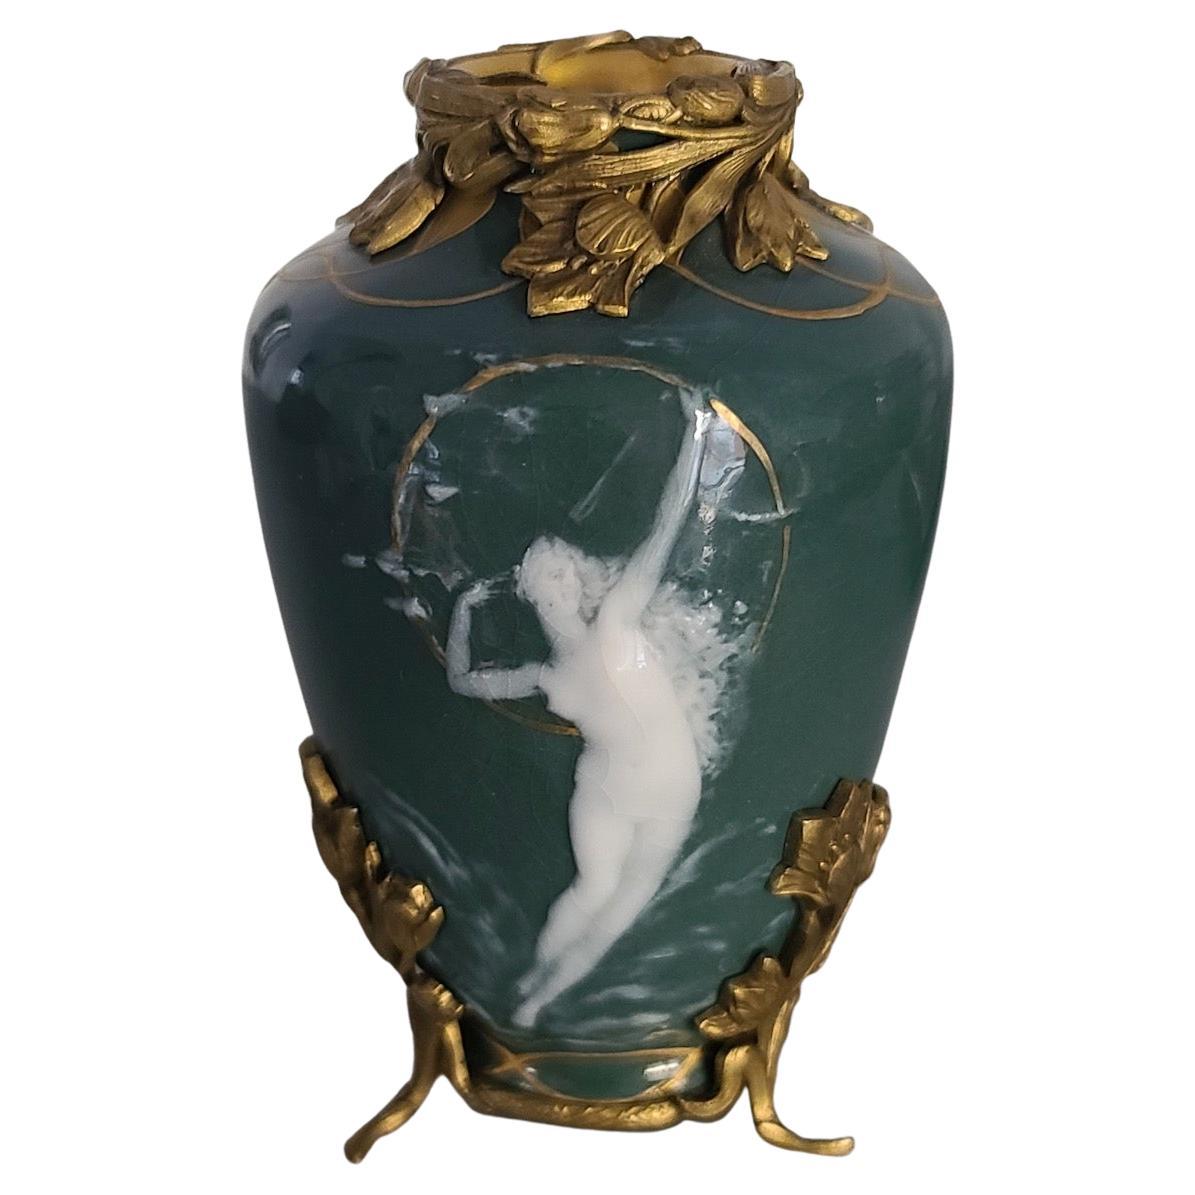 Vase Jewell Art Nouveau français, vers 1890

Vase Jewell en porcelaine française de Pâte-sur-Pâte 
Dessinée avec une Naïade sur un fond vert et des reflets dorés 
Monté en bronze doré sur le bord et reposant sur un pied tripode amovible avec une